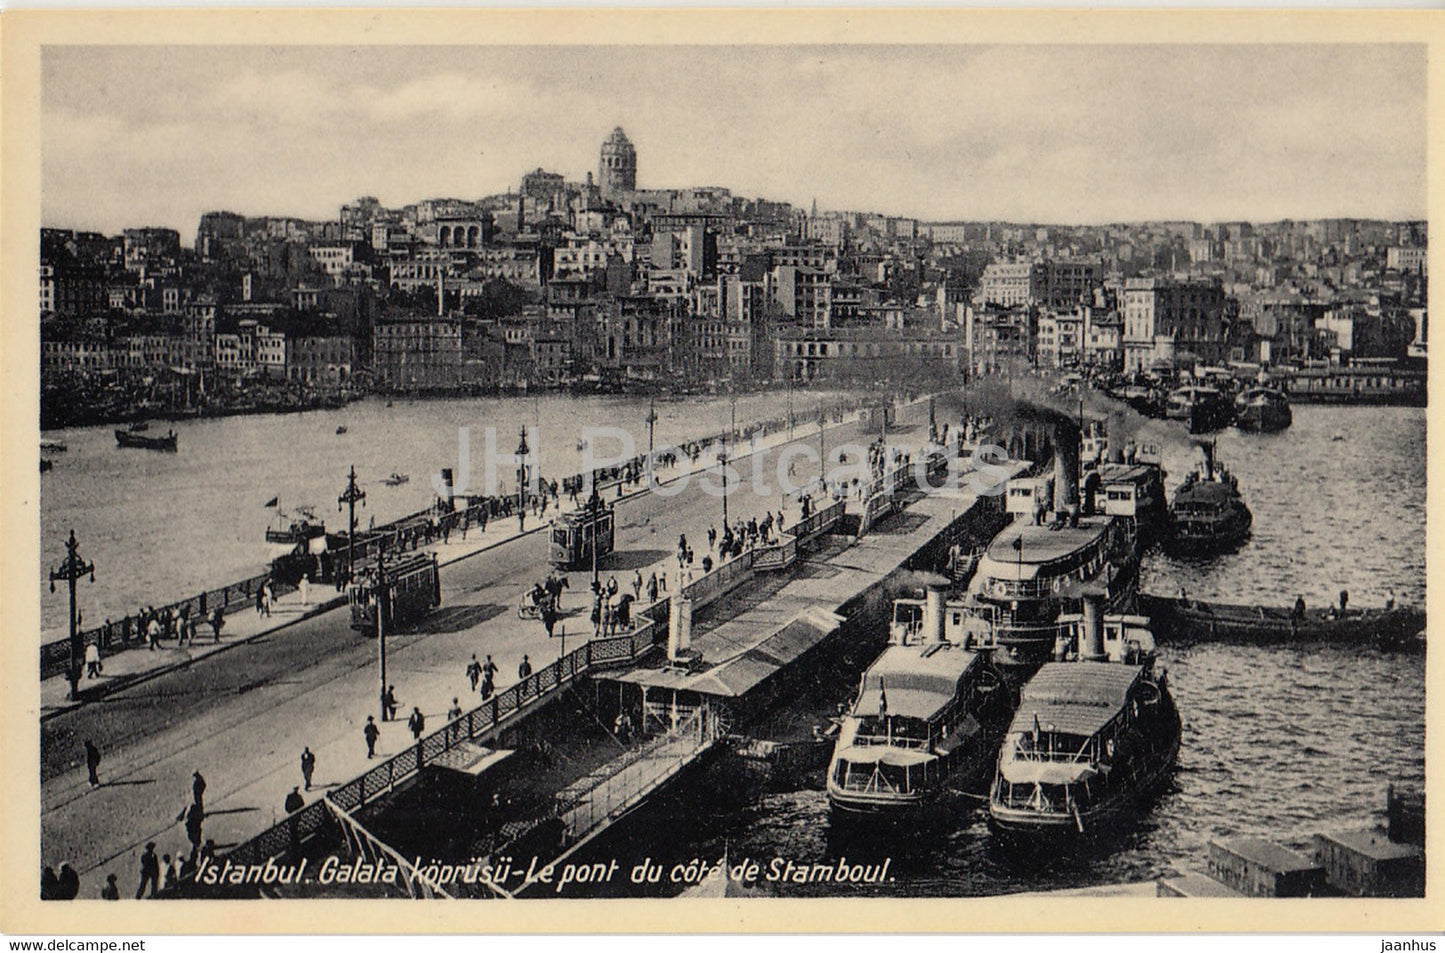 Istanbul - Le Pont du cote de Stamboul - ship - old postcard - Turkey - unused - JH Postcards